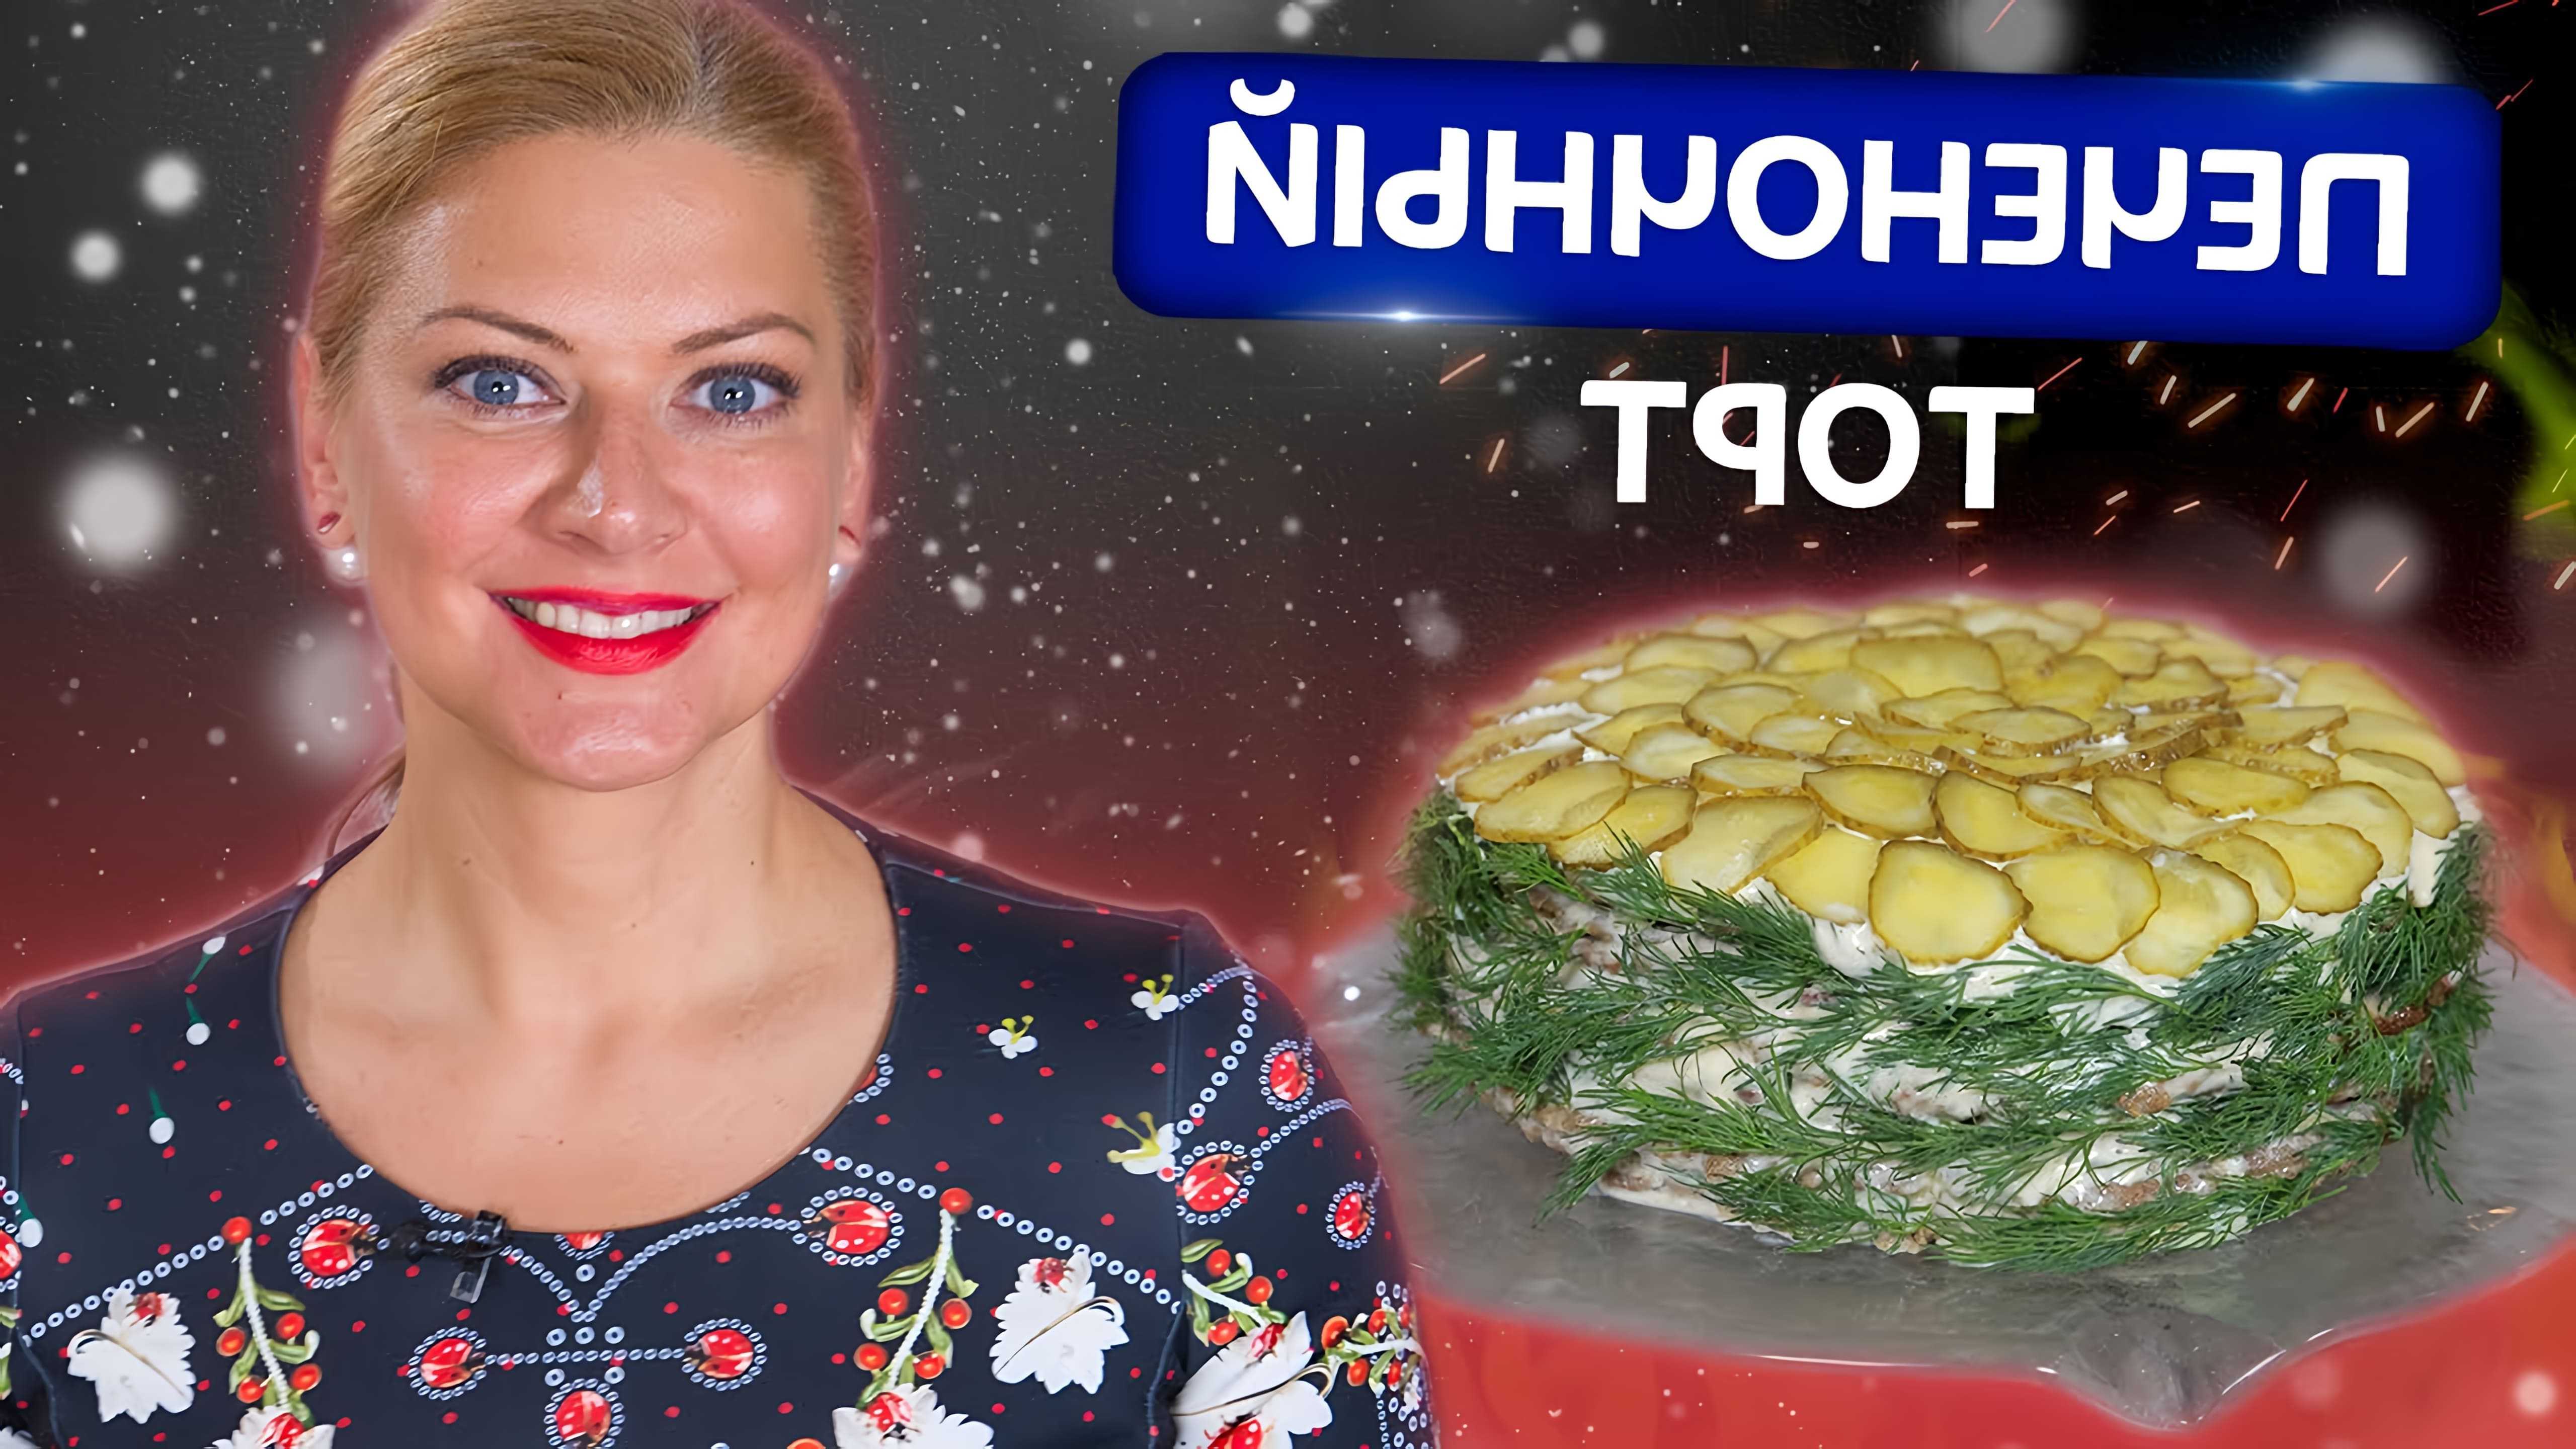 Ливерный торт - традиционное русское блюдо, популярное на новогодних праздниках